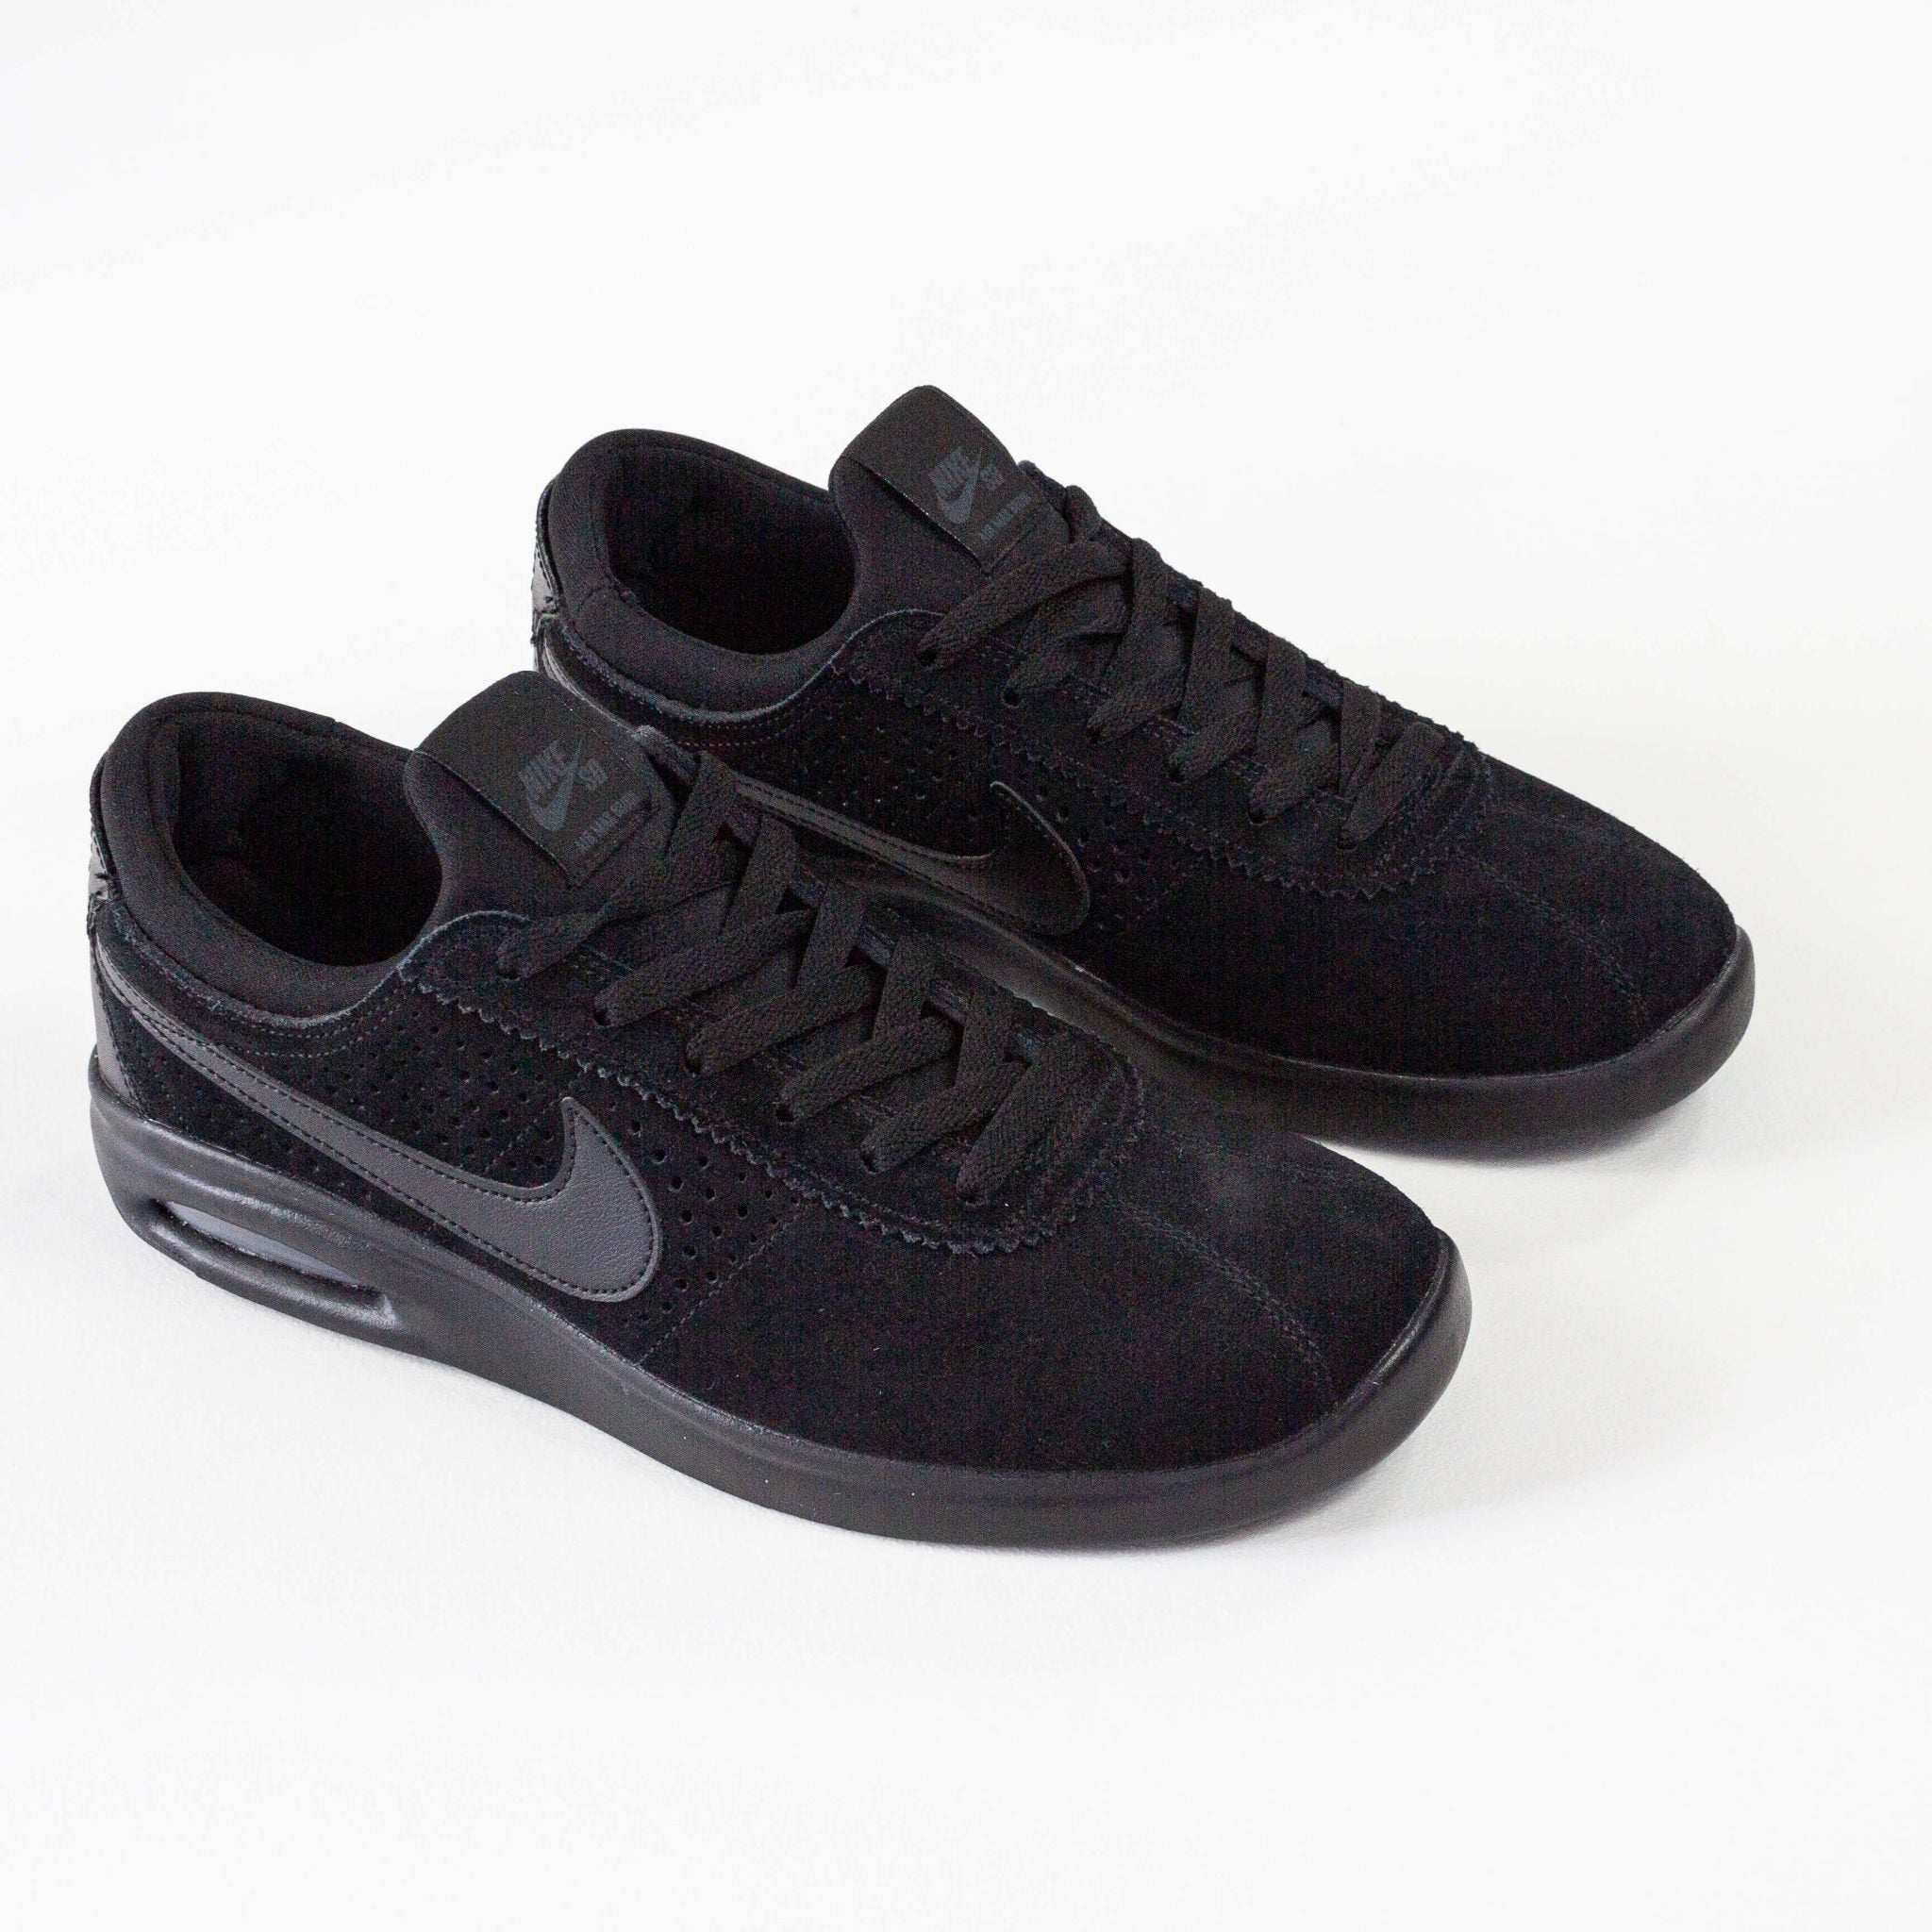 Nike SB Air Max Bruin Vapor Shoes - Black / (003) Remix Casuals